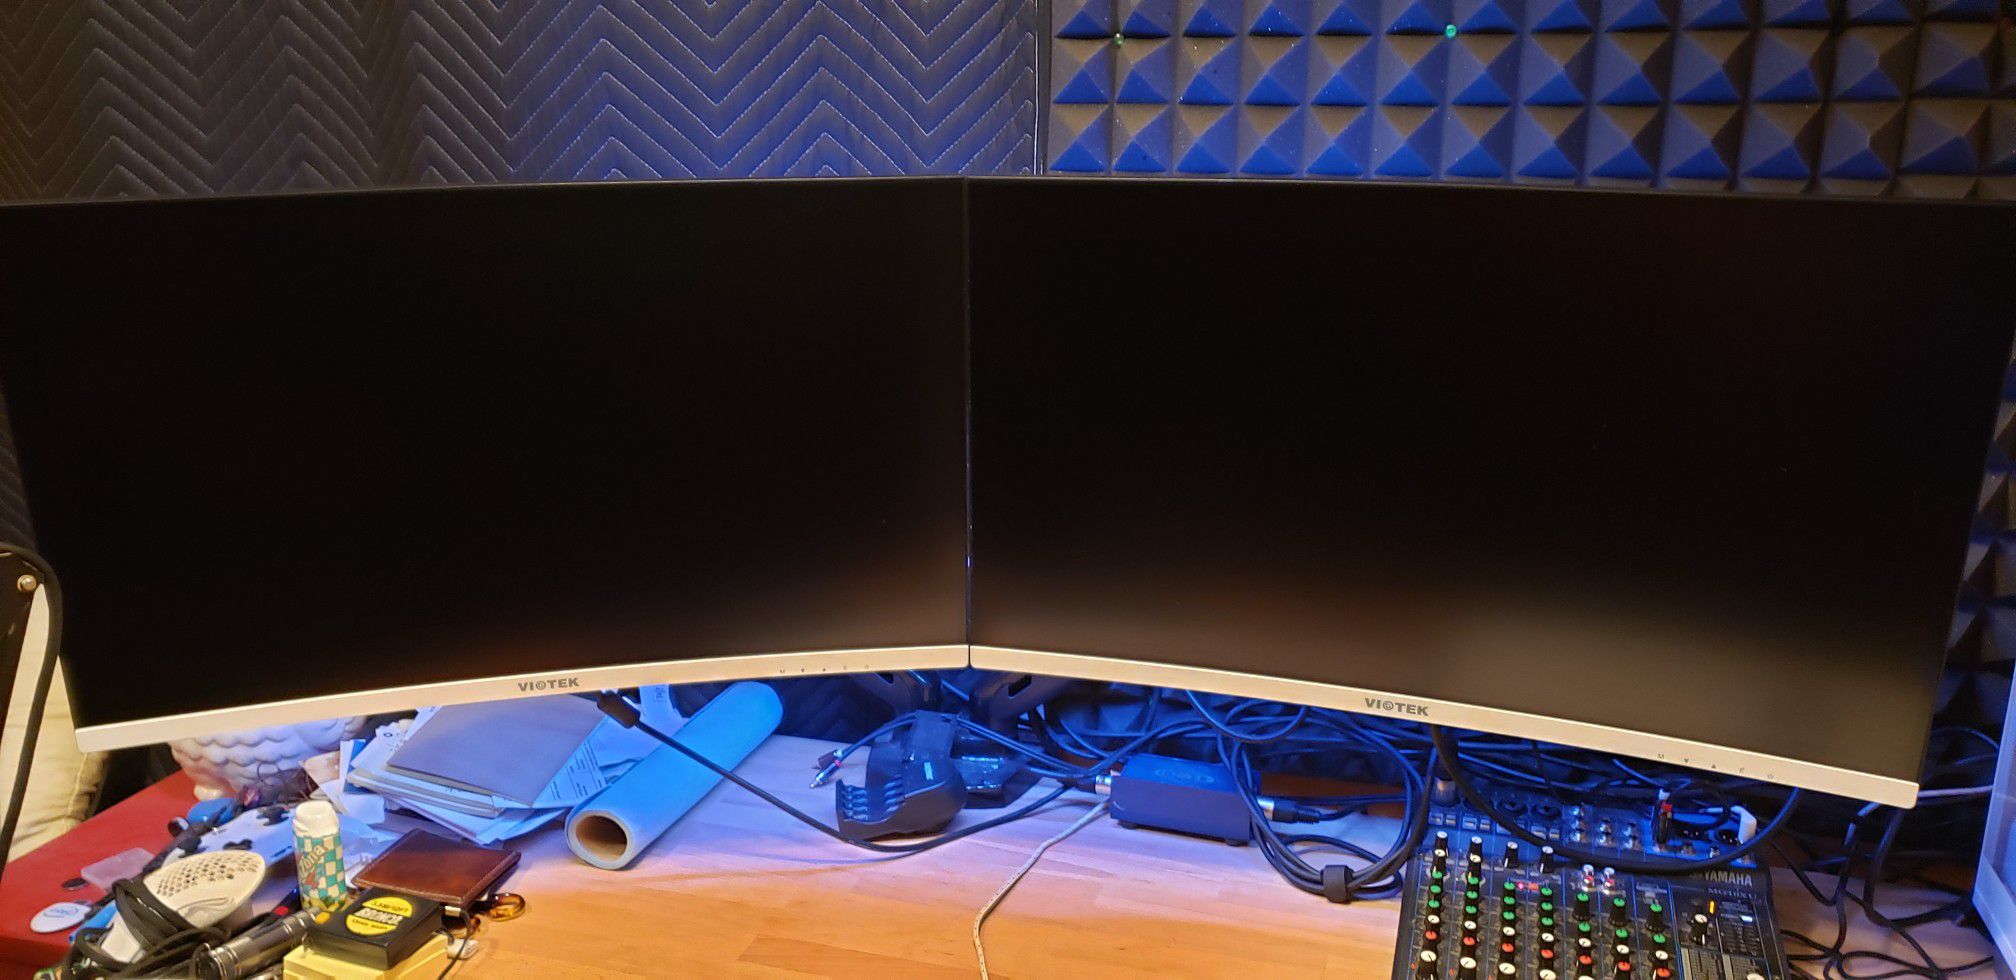 1440p 144hz dual monitor gaming pc streaming setup